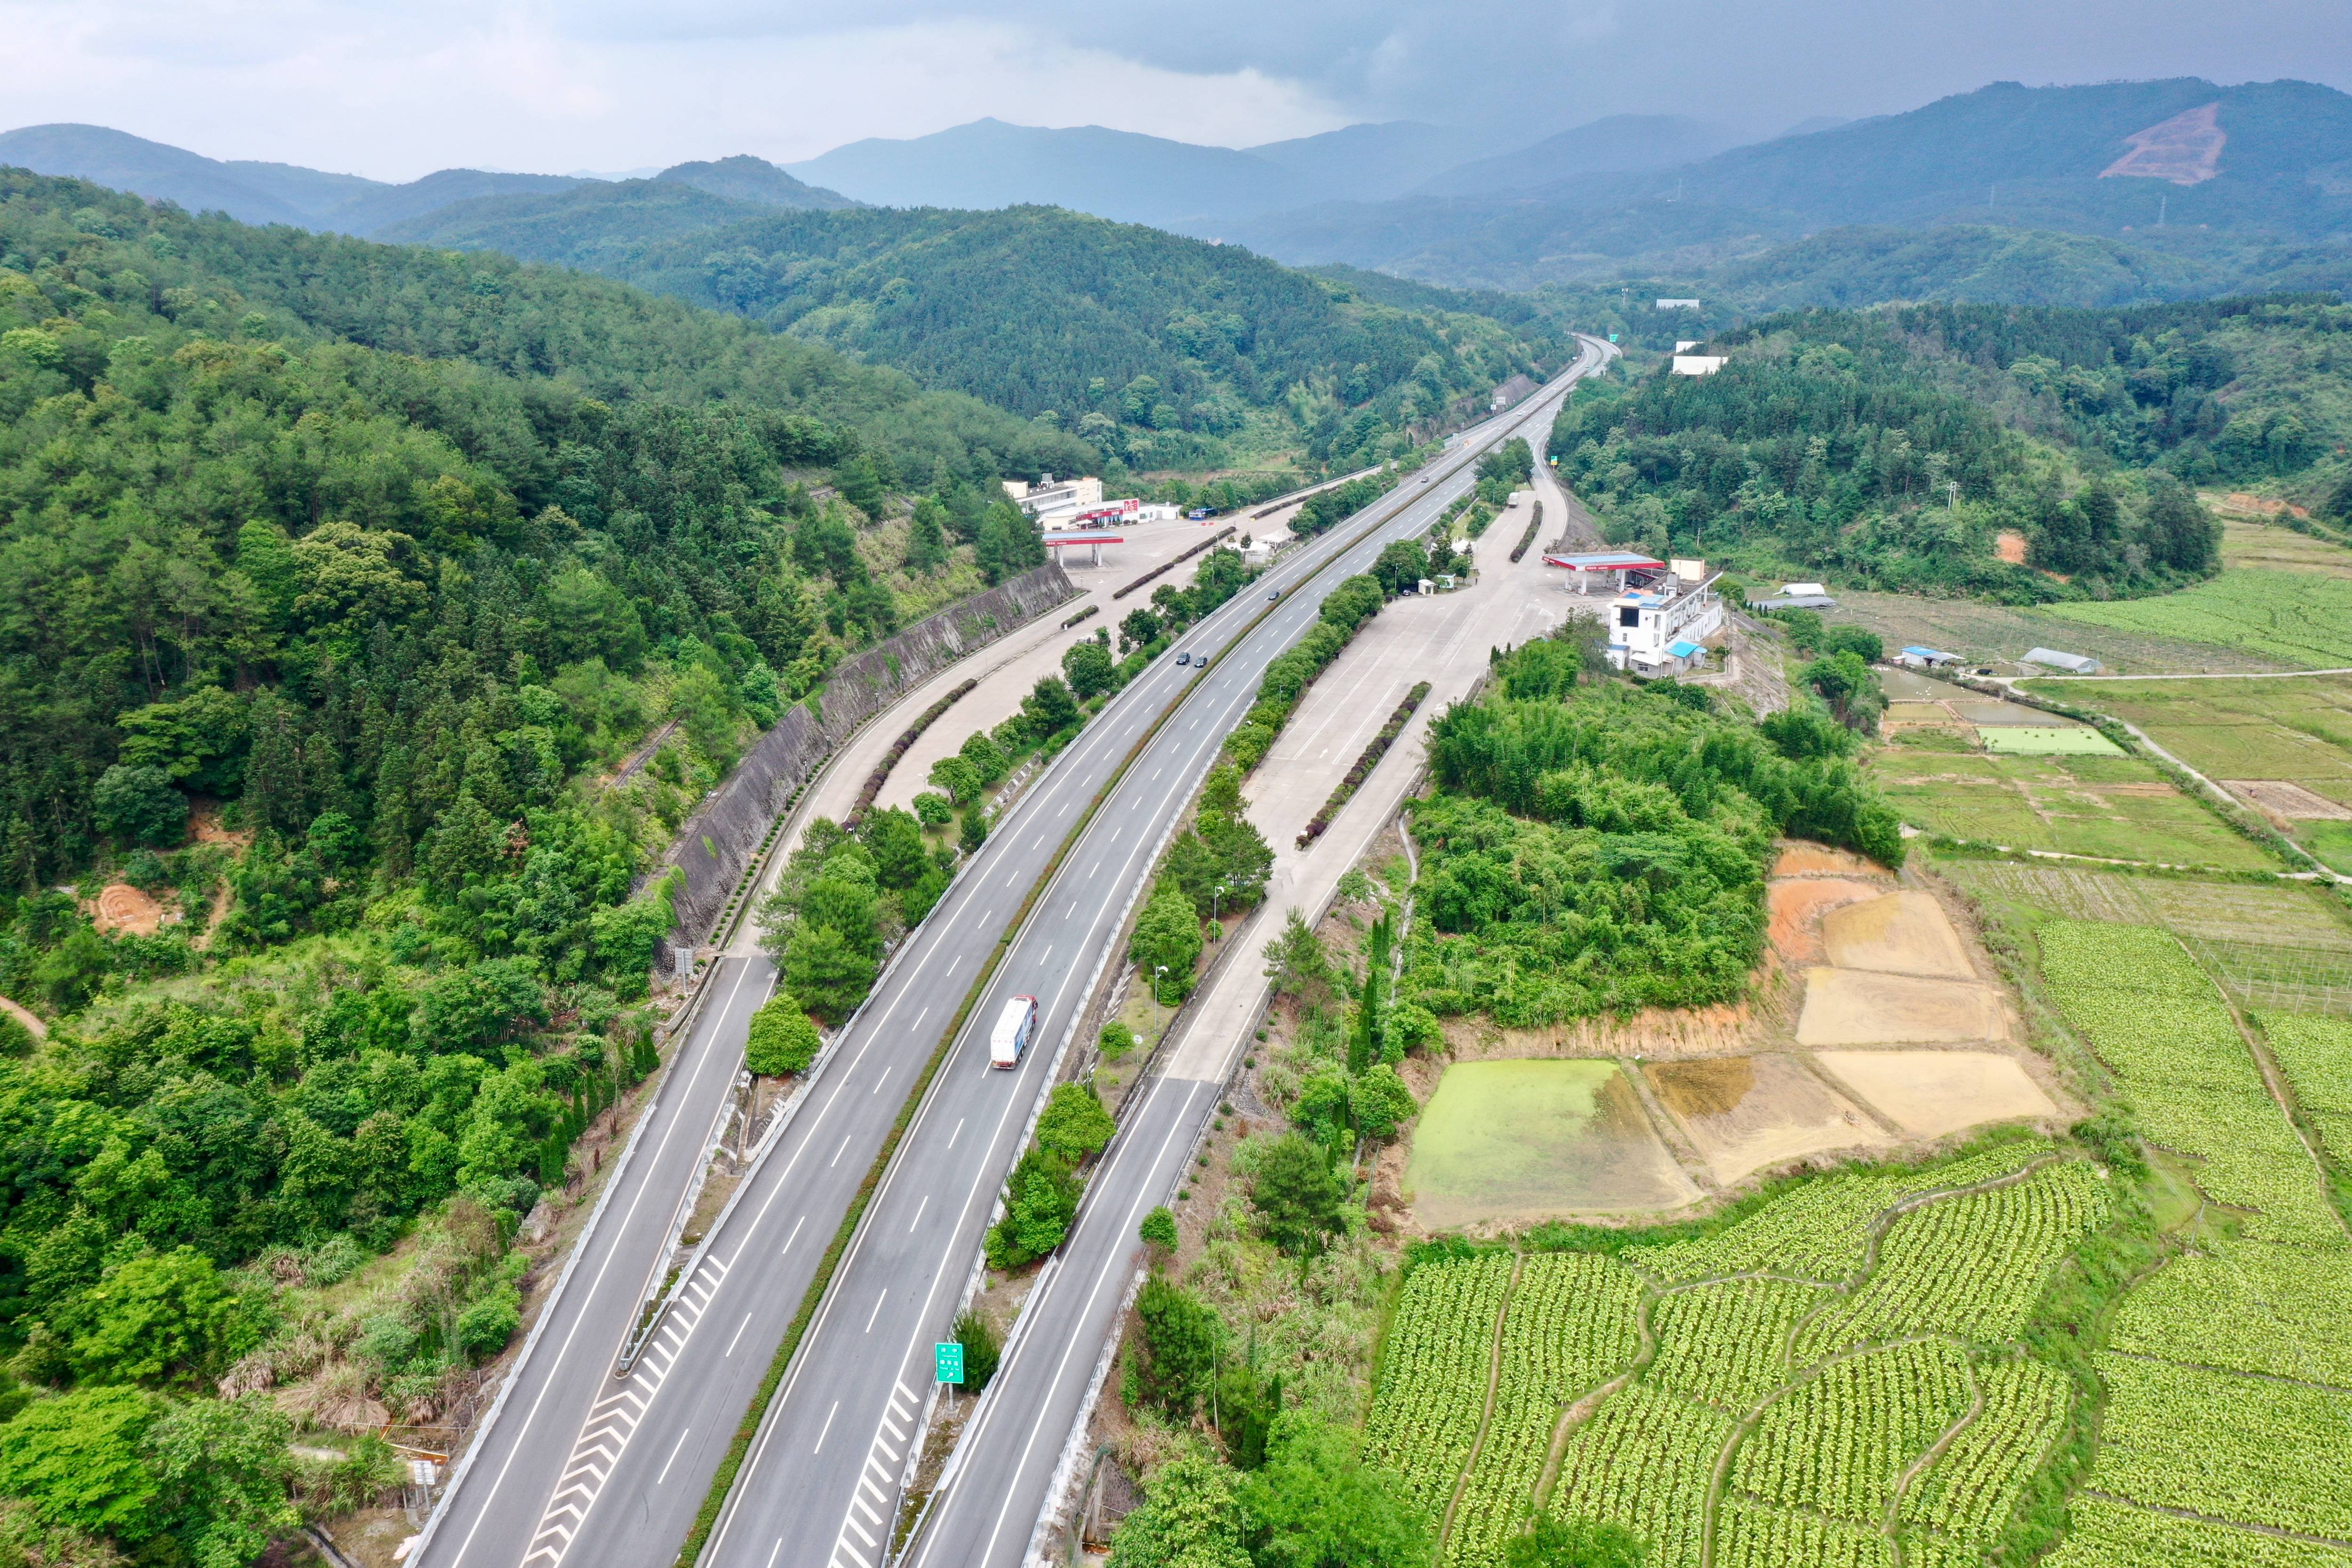 5月13日,车辆行驶在福银高速福建省三明市尤溪县境内路段(无人机照片)